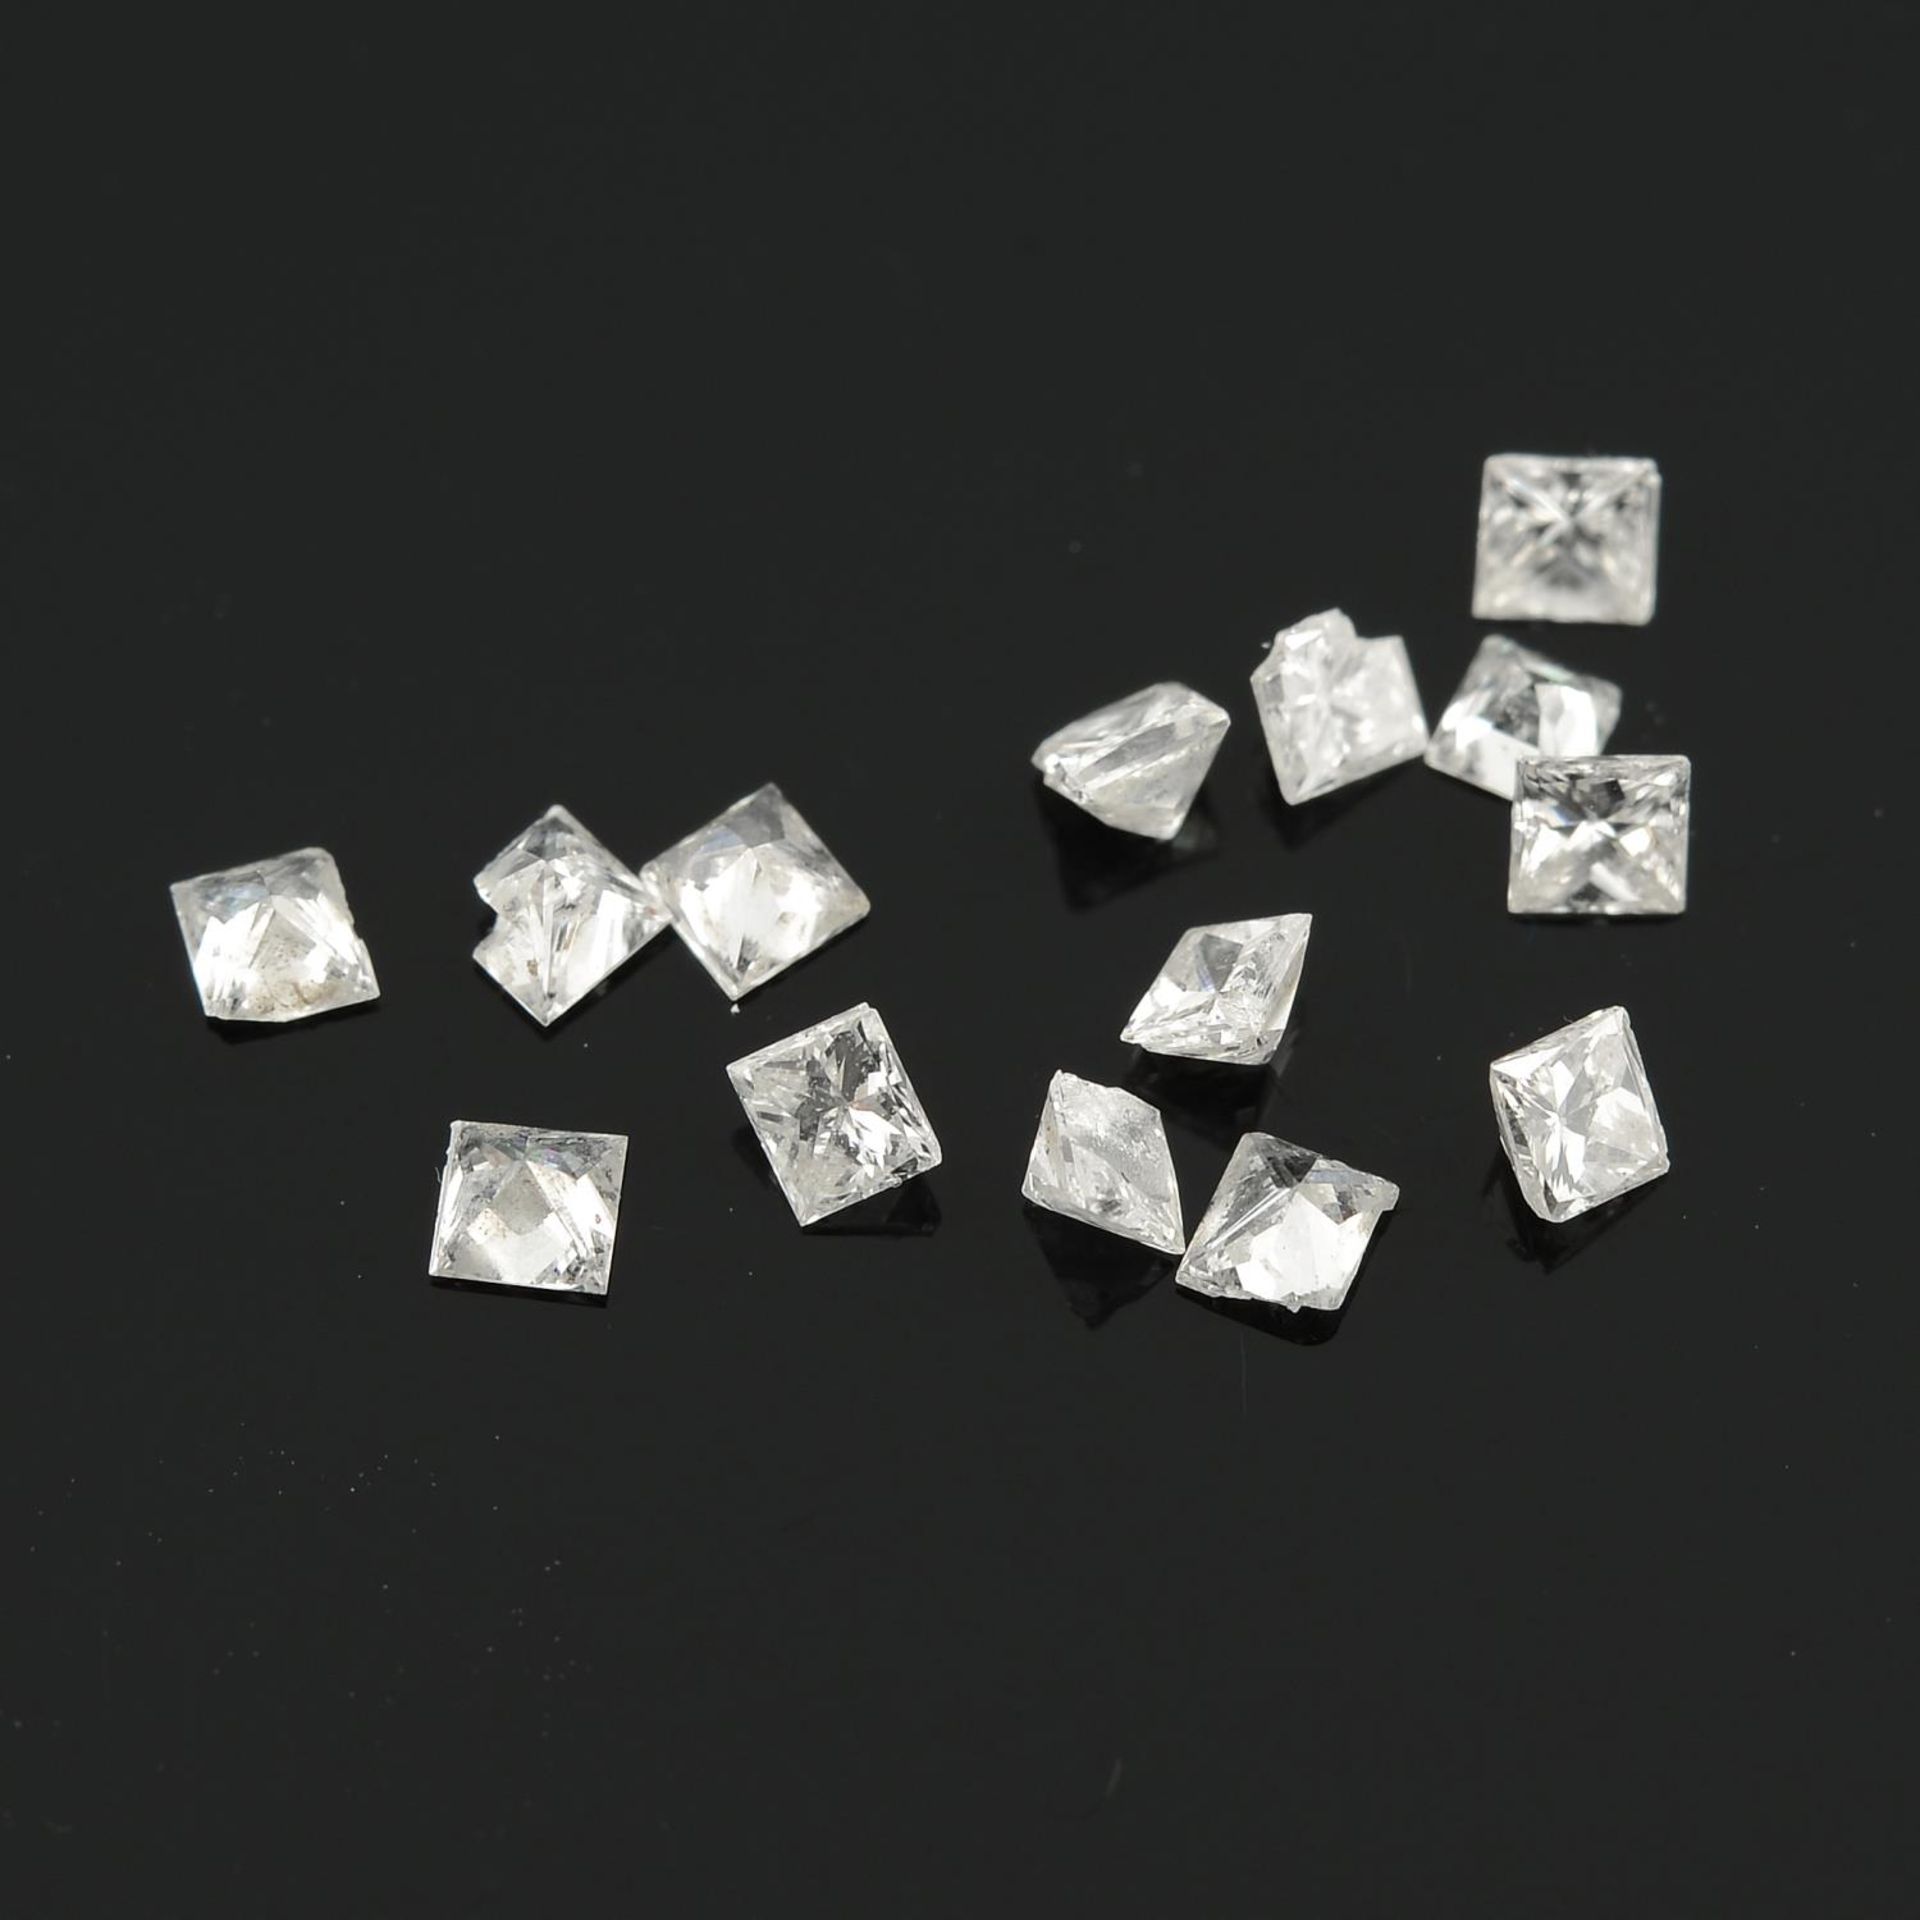 A selection of square shape diamonds.